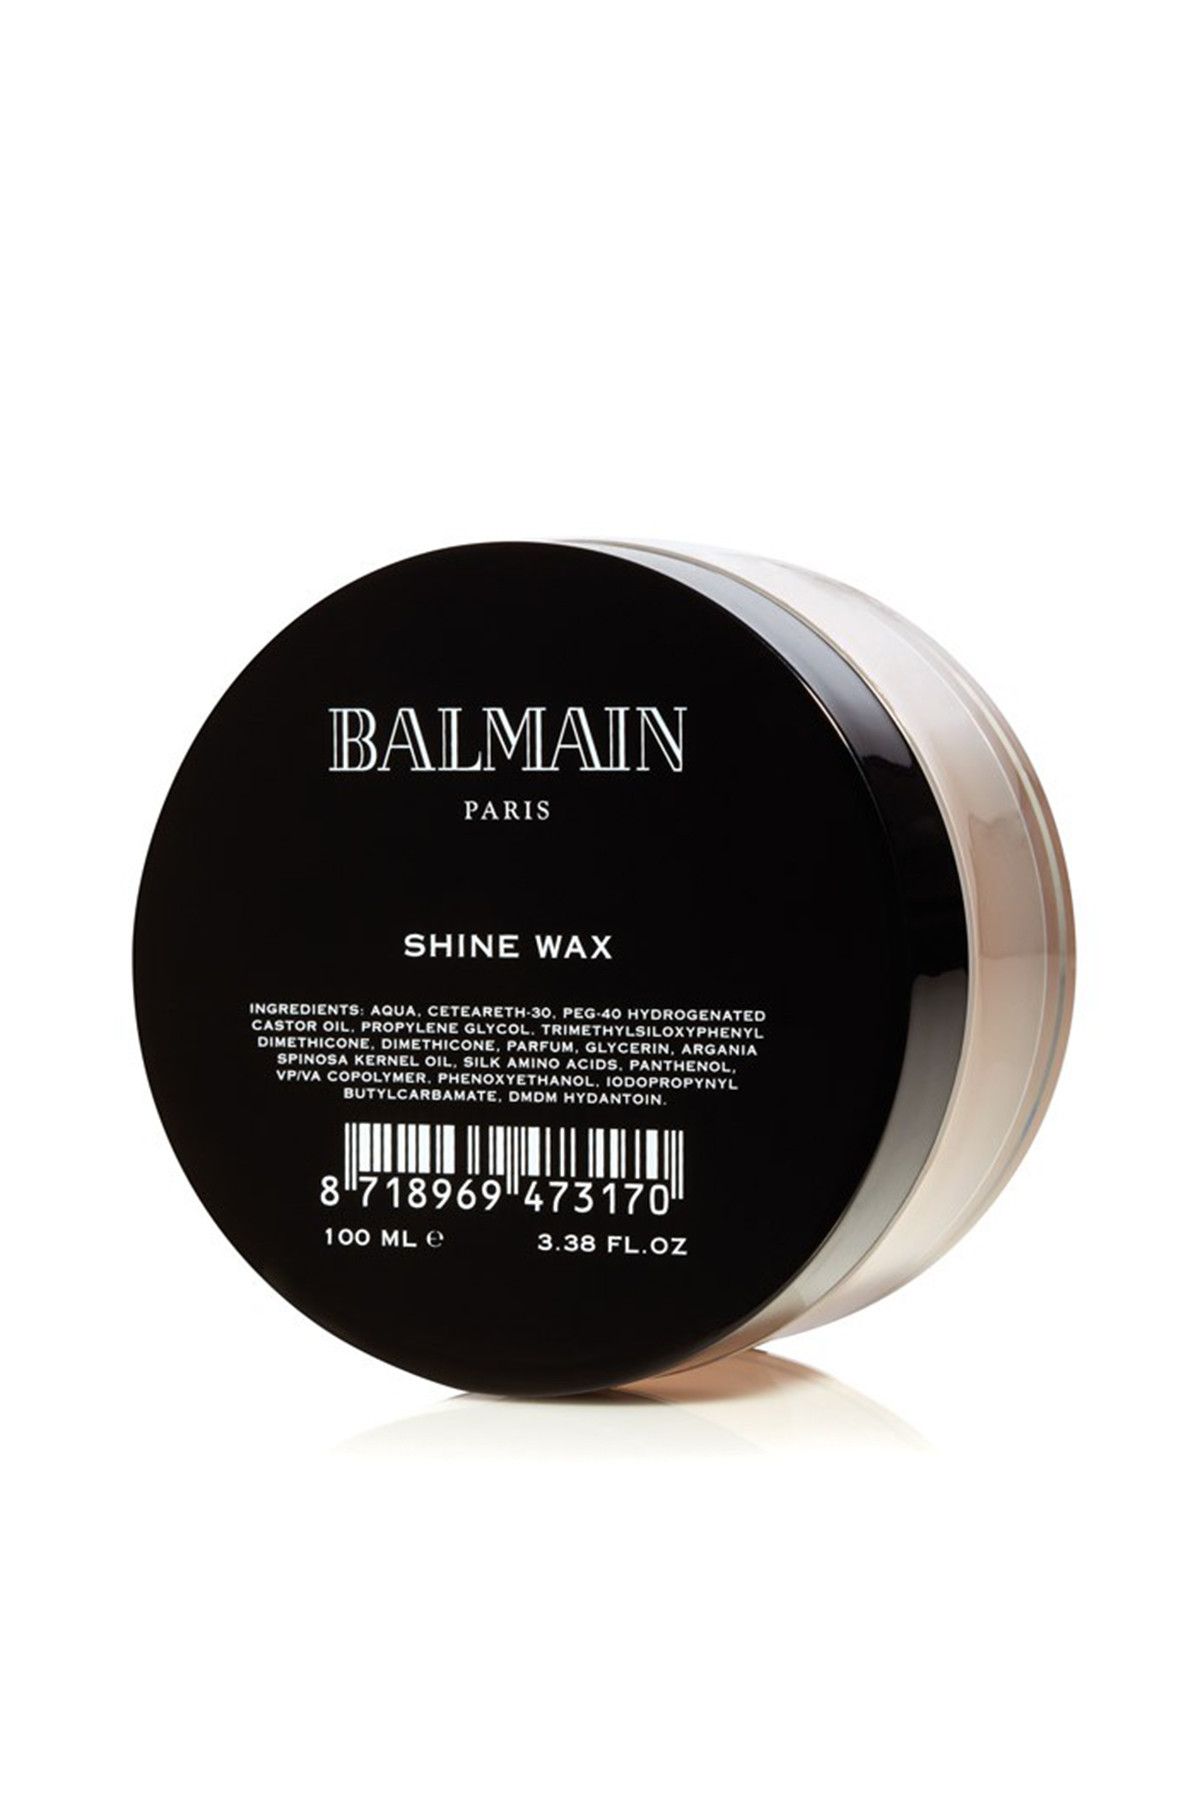 BALMAIN Parlatıcı Wax - Shine Wax 100 ml 8718969473170